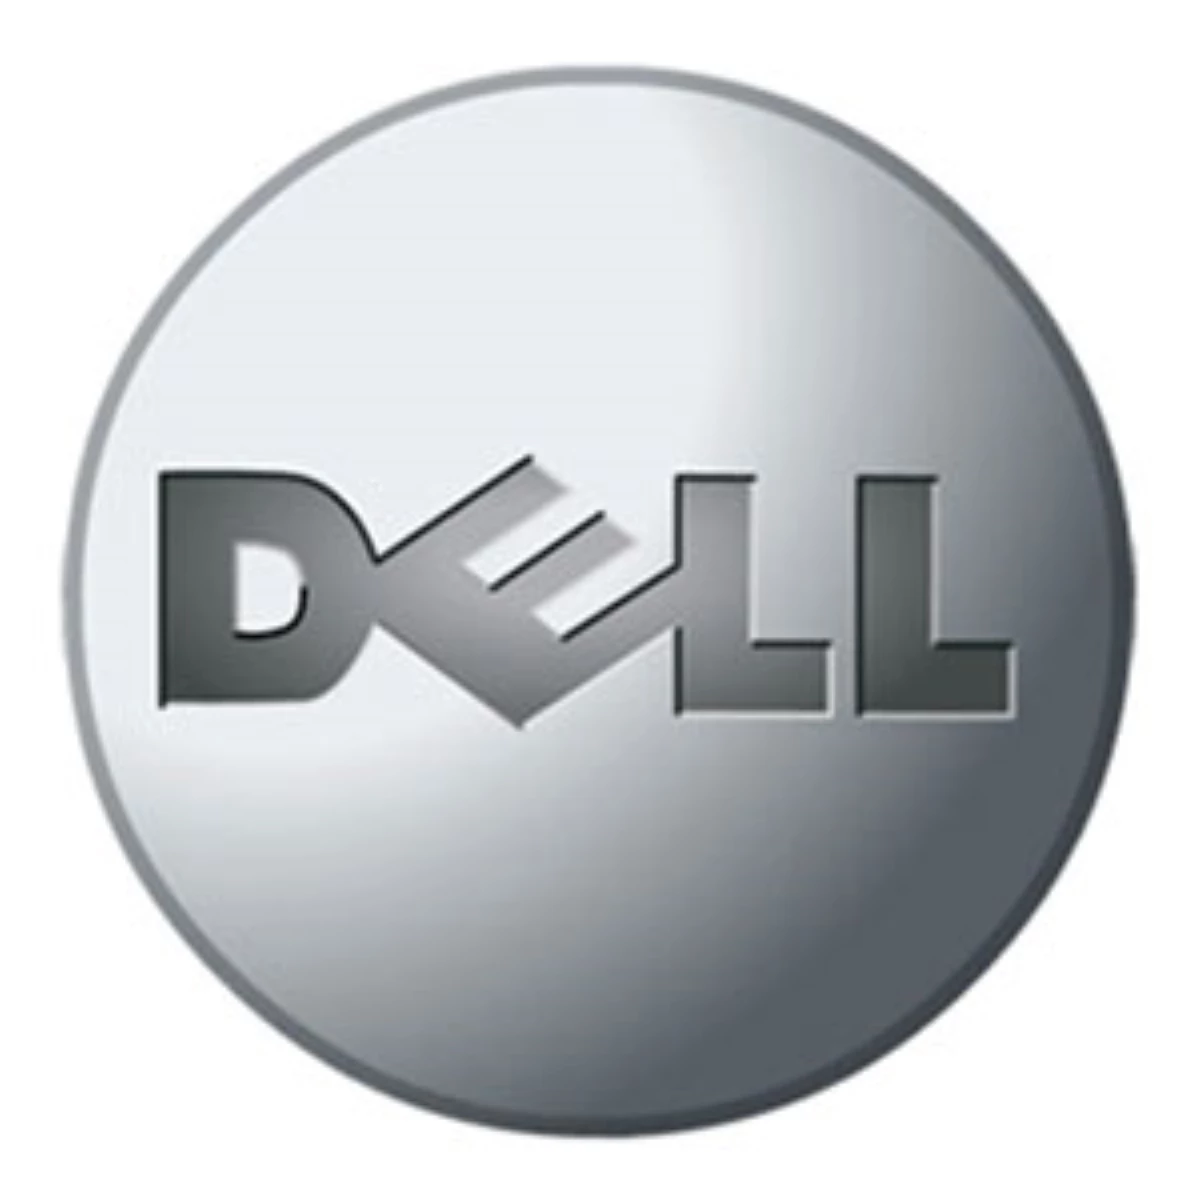 Dell, 2010 Yılından Bu Yana Bayi Sayılarını Yüzde 650 Arttırdı